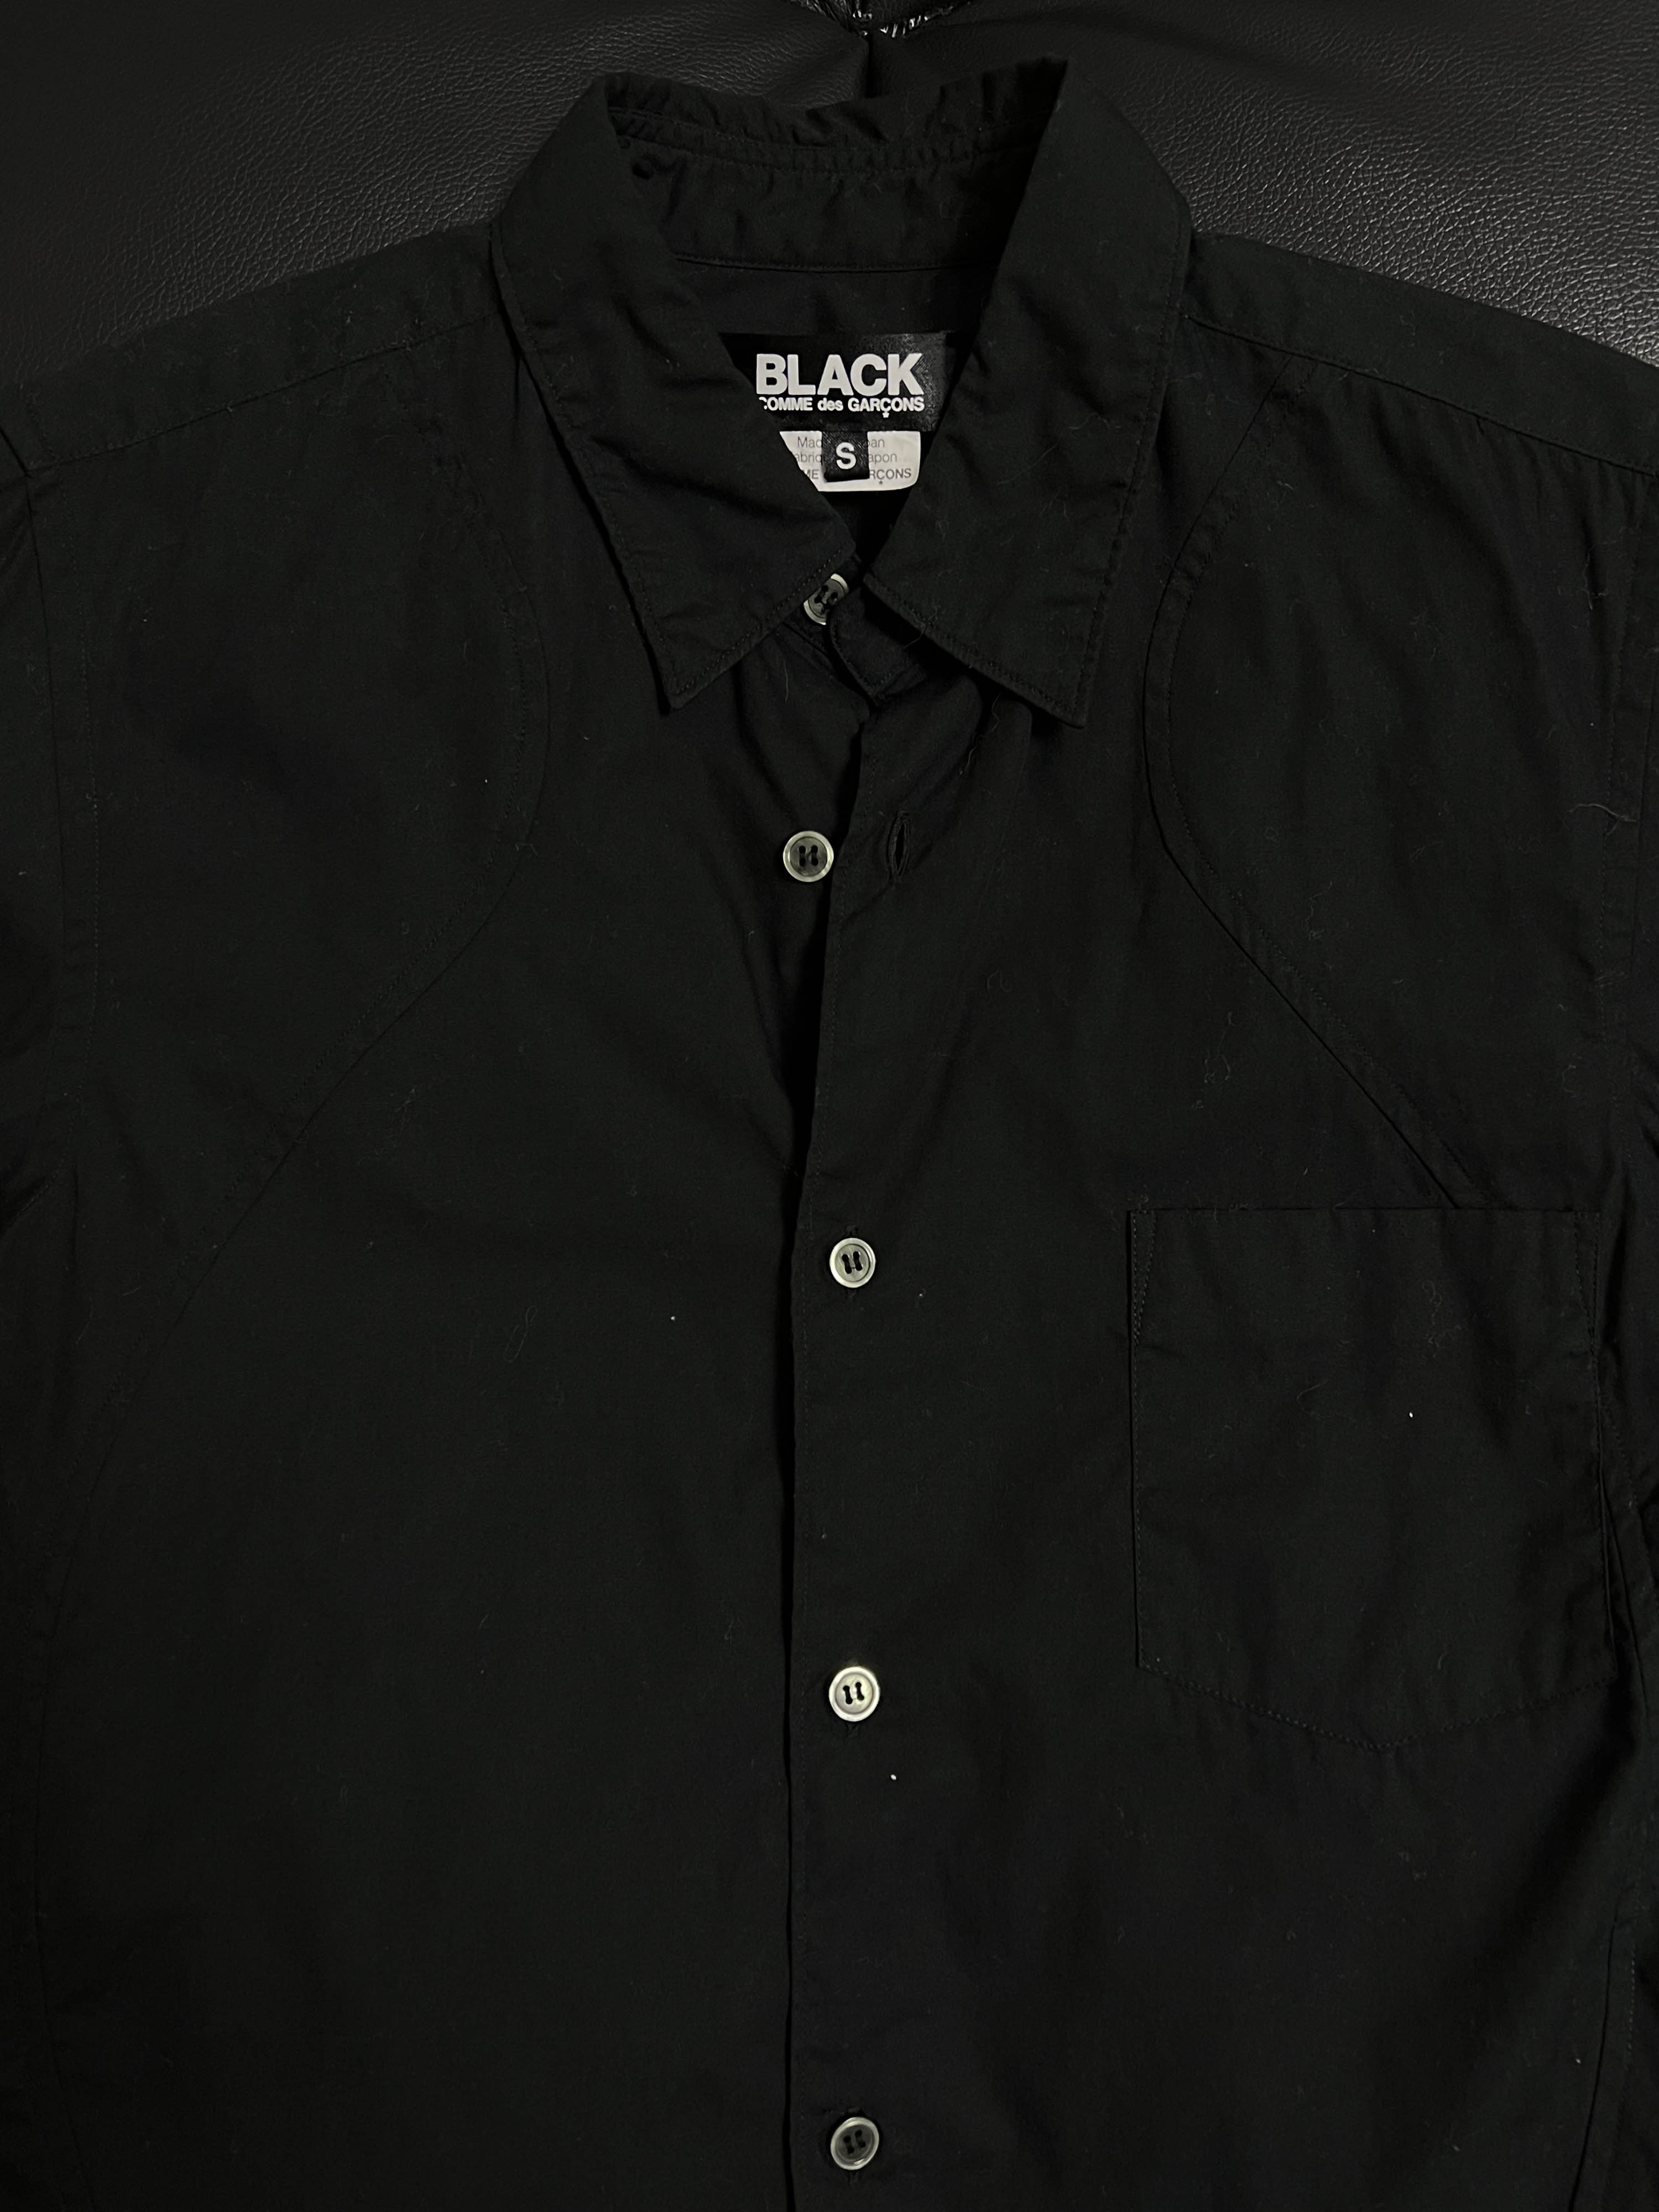 BLACK COMME des GARCONS shirts